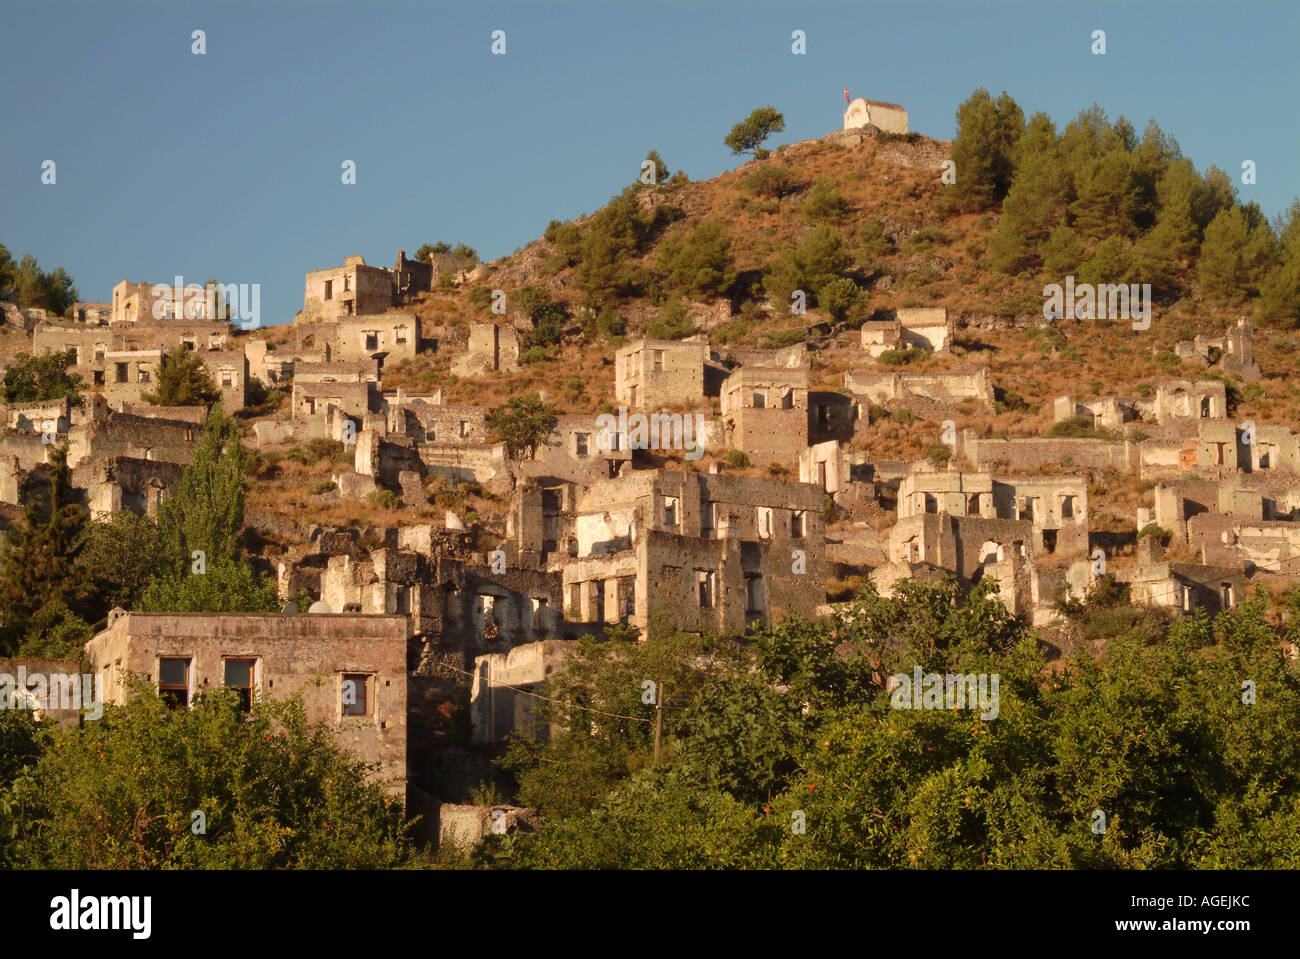 Einsamen und verlassenen griechischen Dorf Kayakoy, in der Nähe von Fethiye, in der Nähe von Dalaman, türkische Riviera, Türkei, Europa Stockfoto